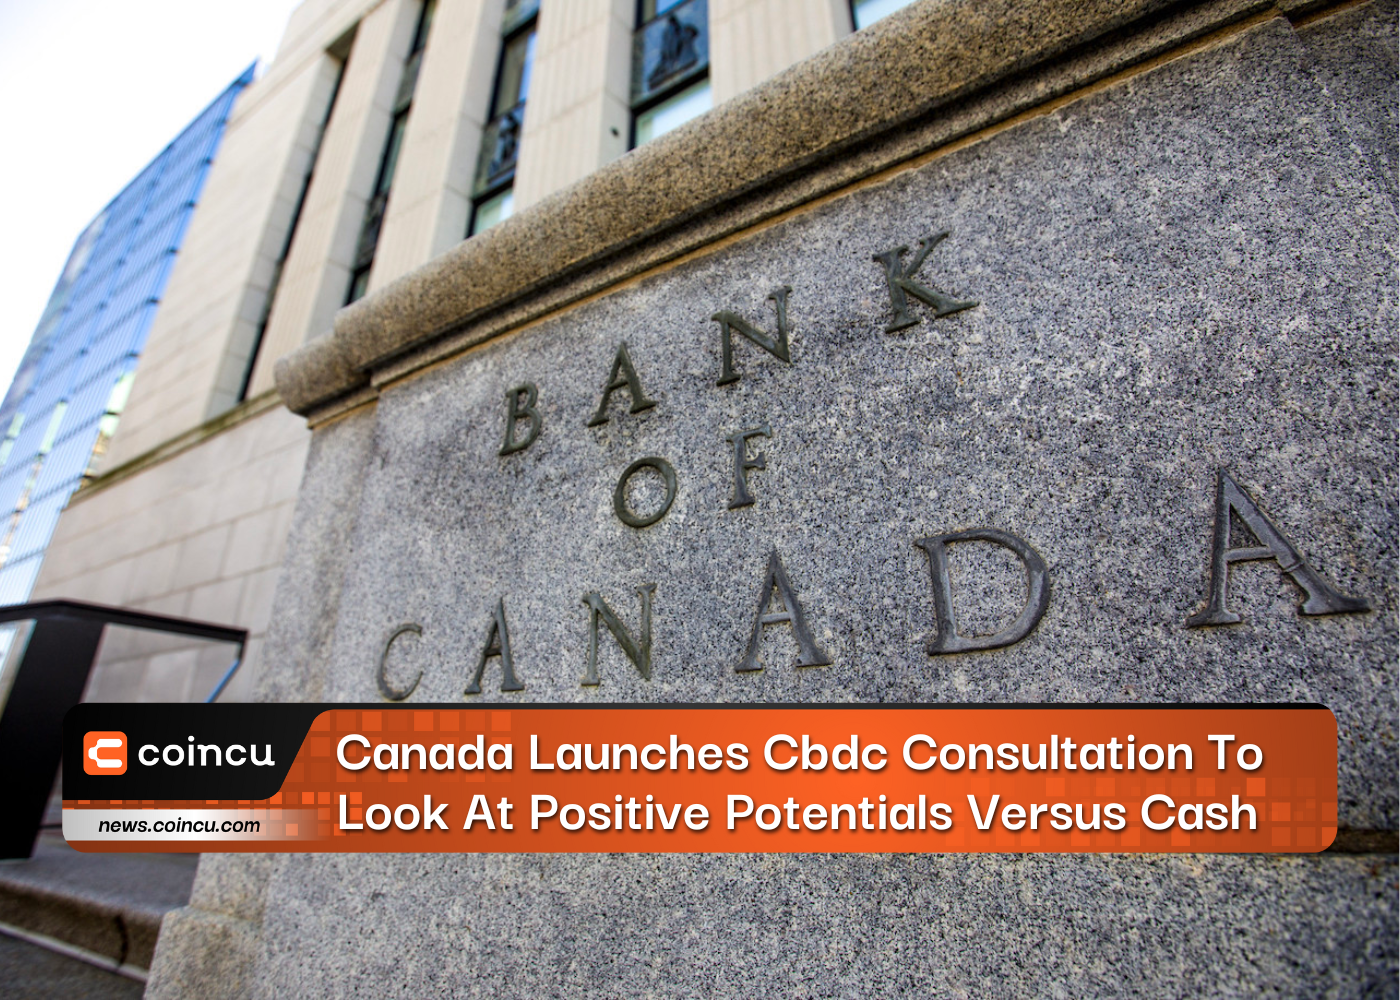 Canada triển khai tư vấn Cbdc để xem xét tiềm năng tích cực so với tiền mặt